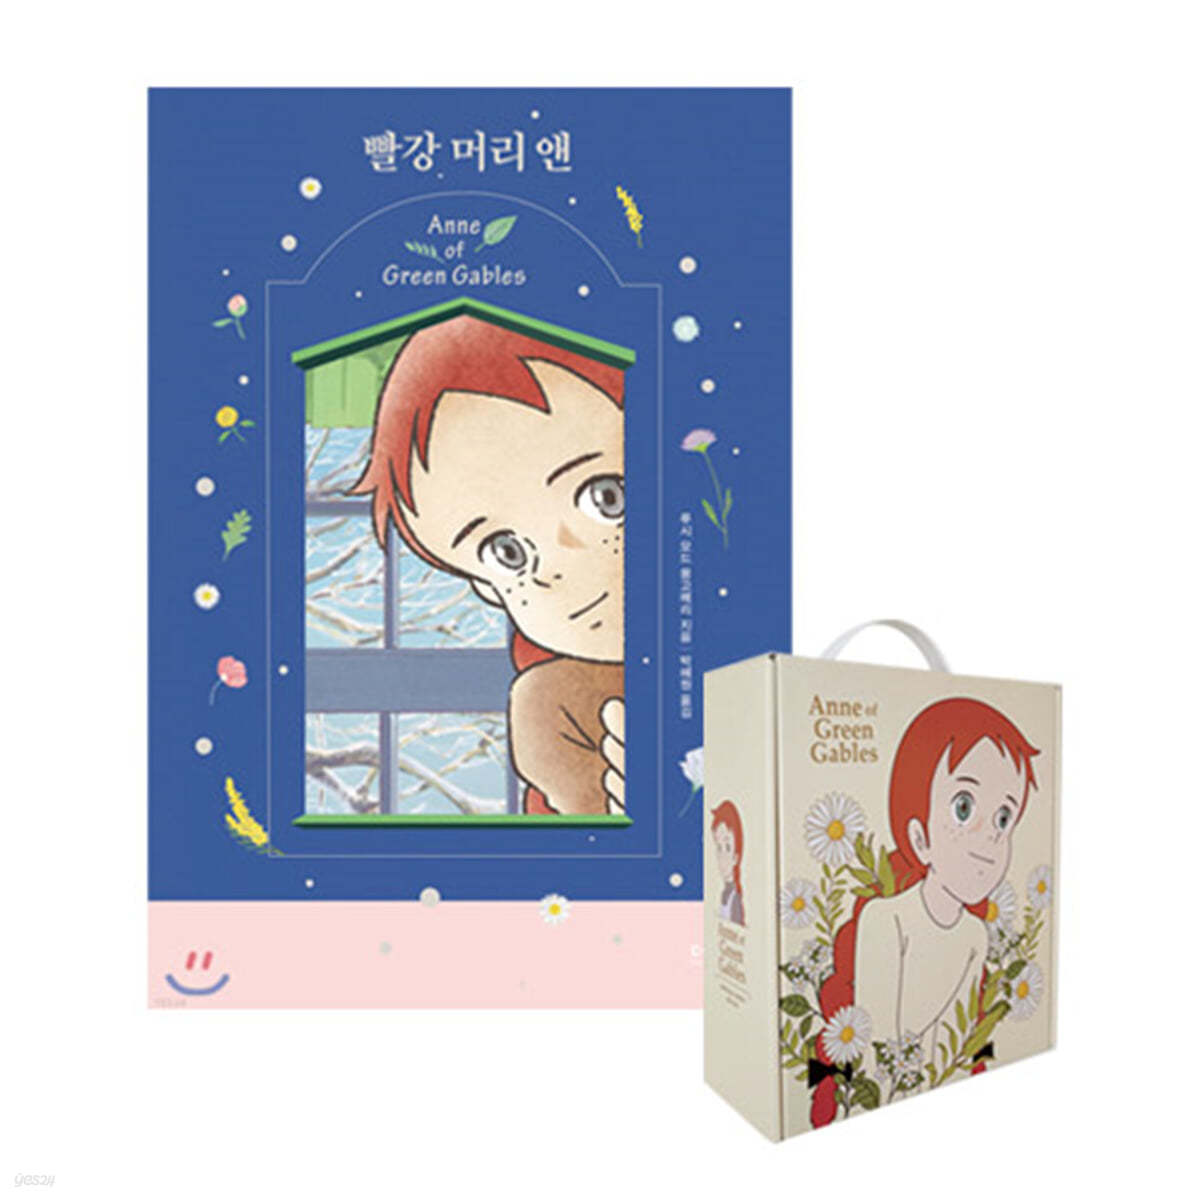 [종료] [YES24] 빨강 머리 앤 양장 + 빨강 머리앤 드립백 커피 선물 세트